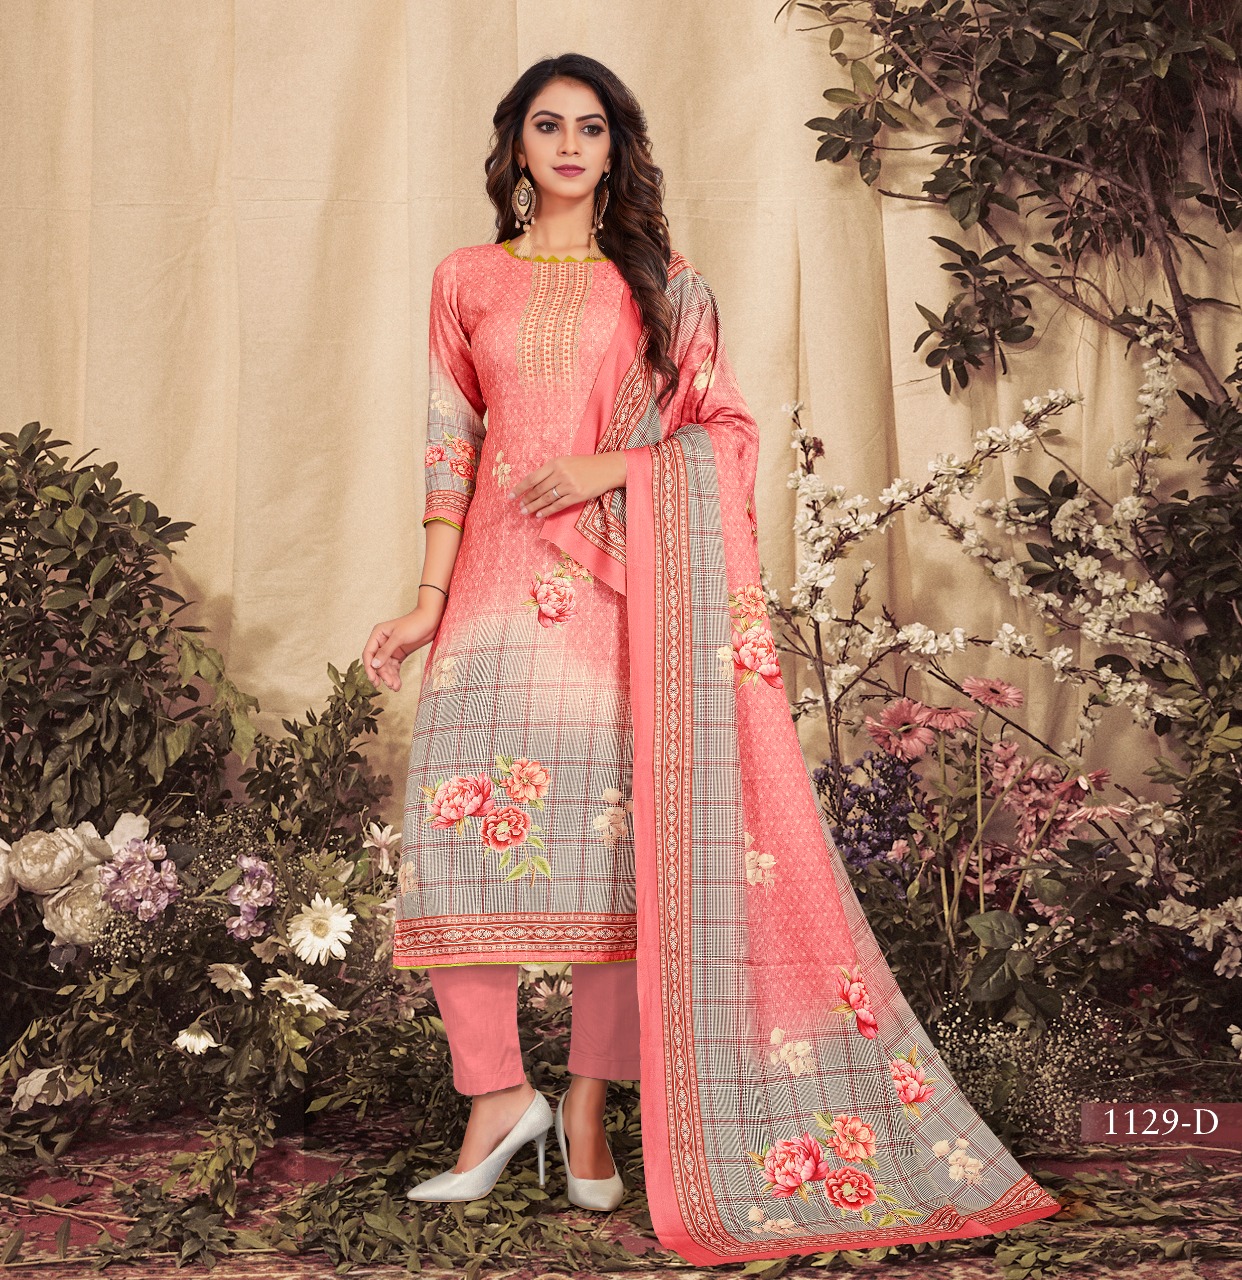 bipson nargis d no 1129 Woollen Pashmina exclusive print and colours salwar suit colour set